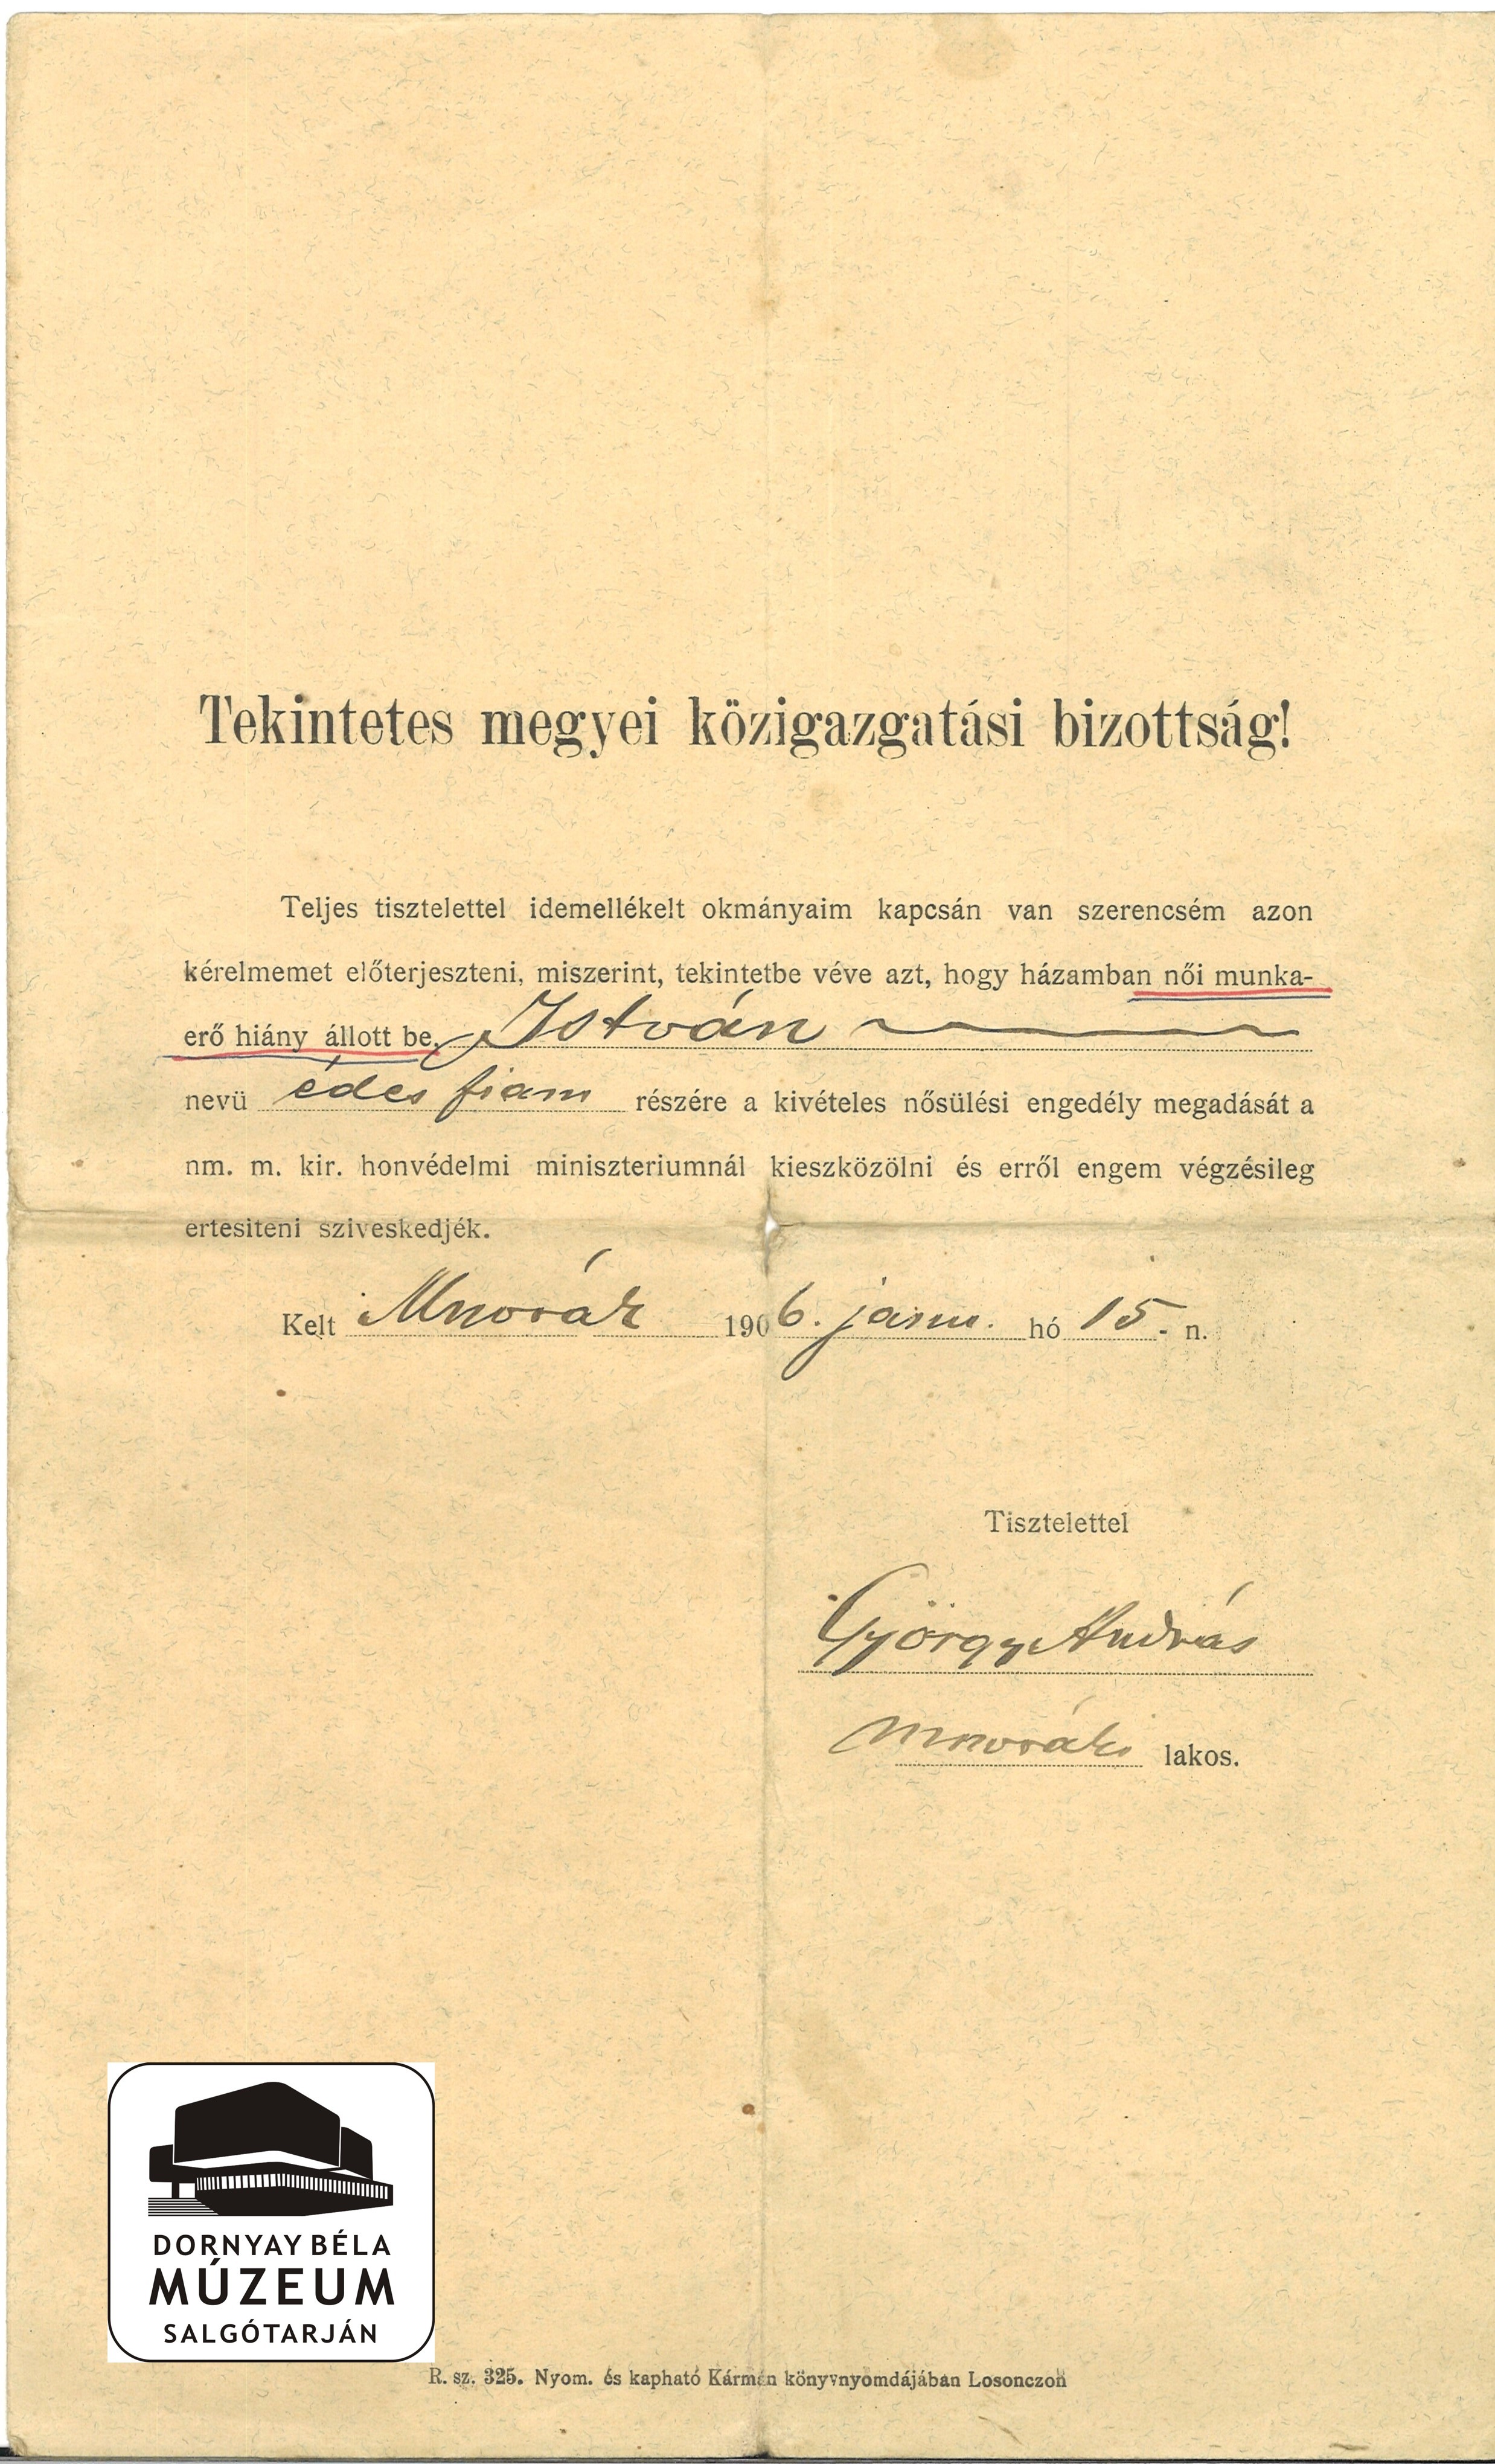 Kérvény kivételes nősülési engedély megadása tárgyában (Dornyay Béla Múzeum, Salgótarján CC BY-NC-SA)